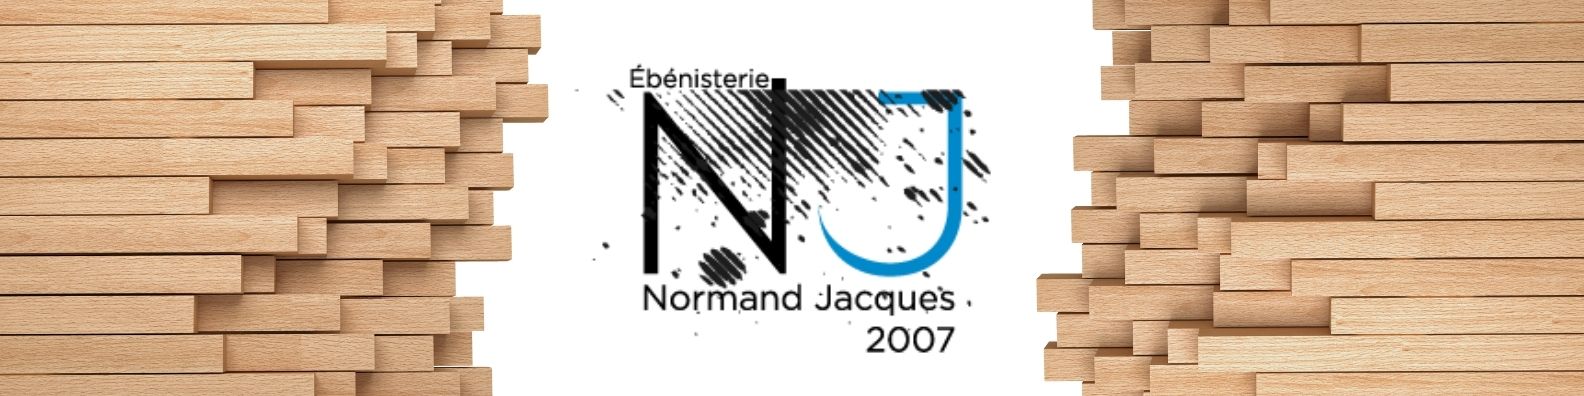 Ébénisterie Normand Jacques 1